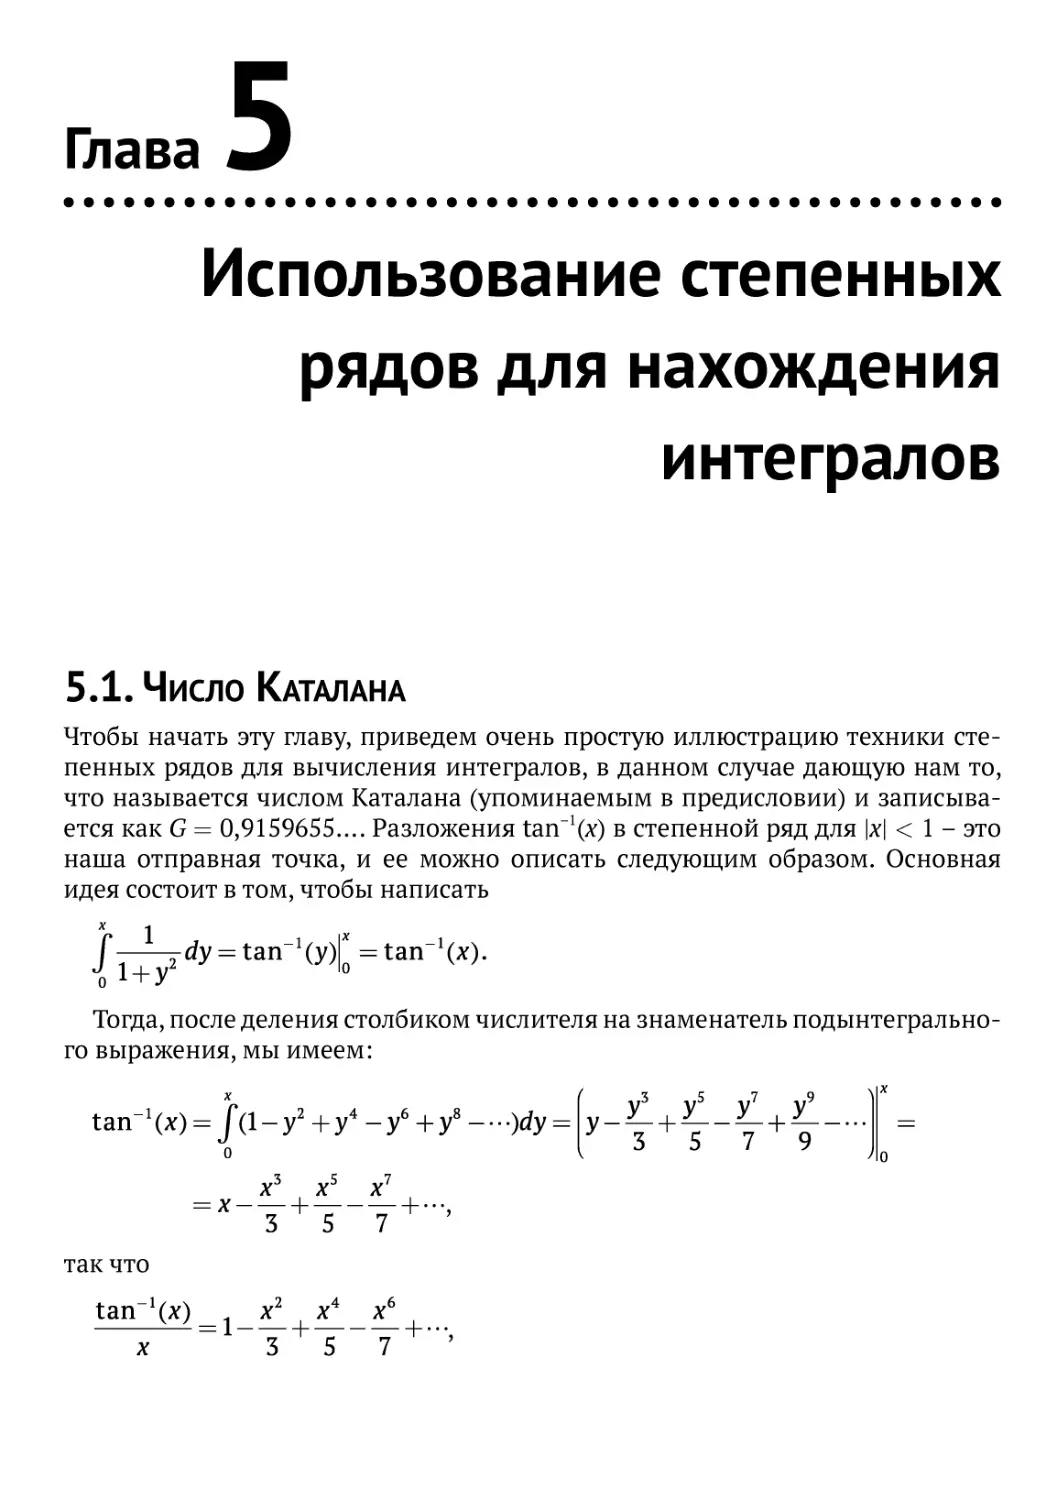 Использование степенных рядов для нахождения интегралов
5.1. Число Каталана